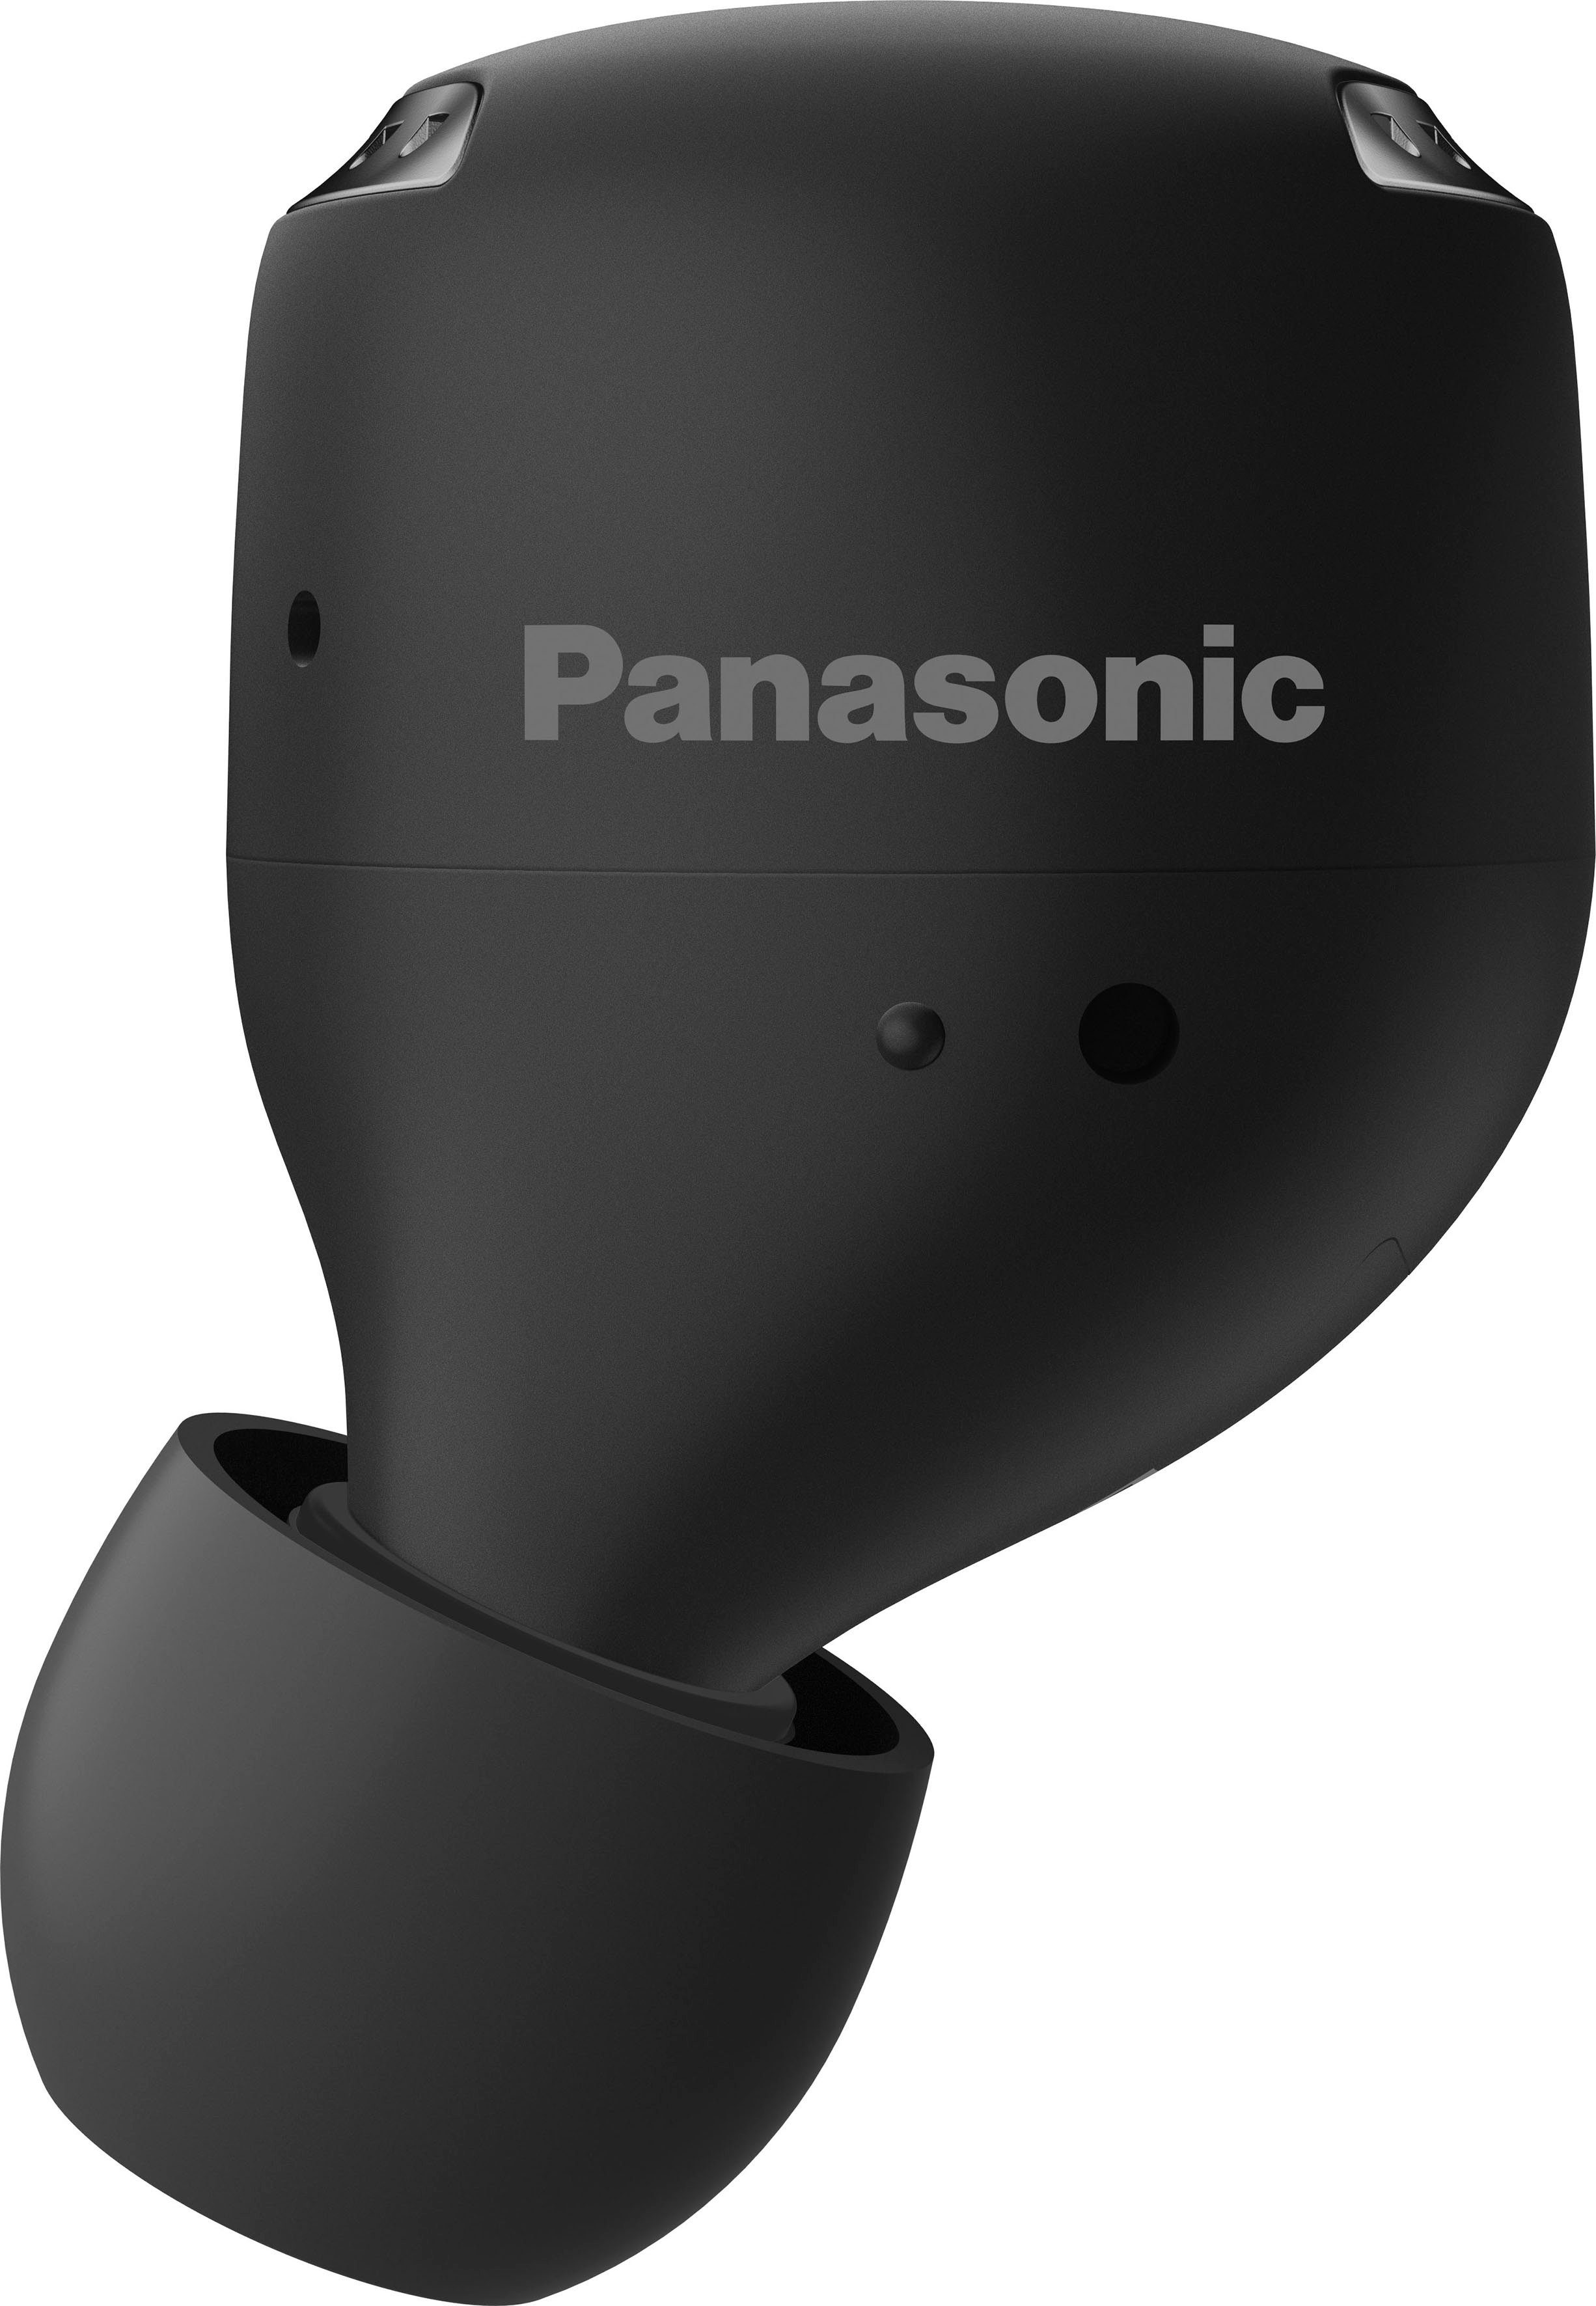 True wireless schwarz Panasonic RZ-S500WE In-Ear-Kopfhörer Bluetooth) (Noise-Cancelling, Wireless, Sprachsteuerung,